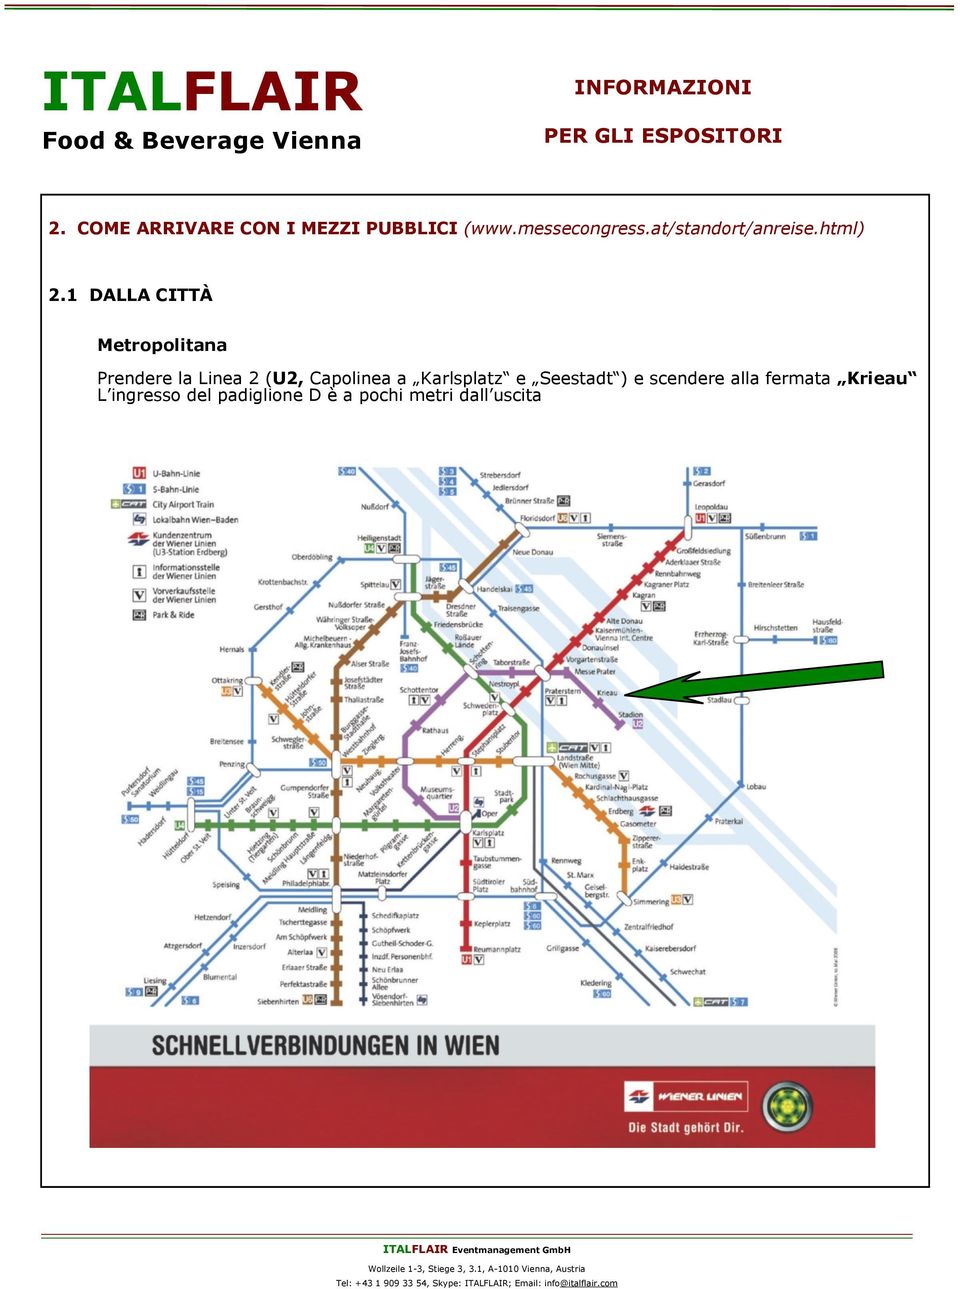 1 DALLA CITTÀ Metropolitana Prendere la Linea 2 (U2, Capolinea a